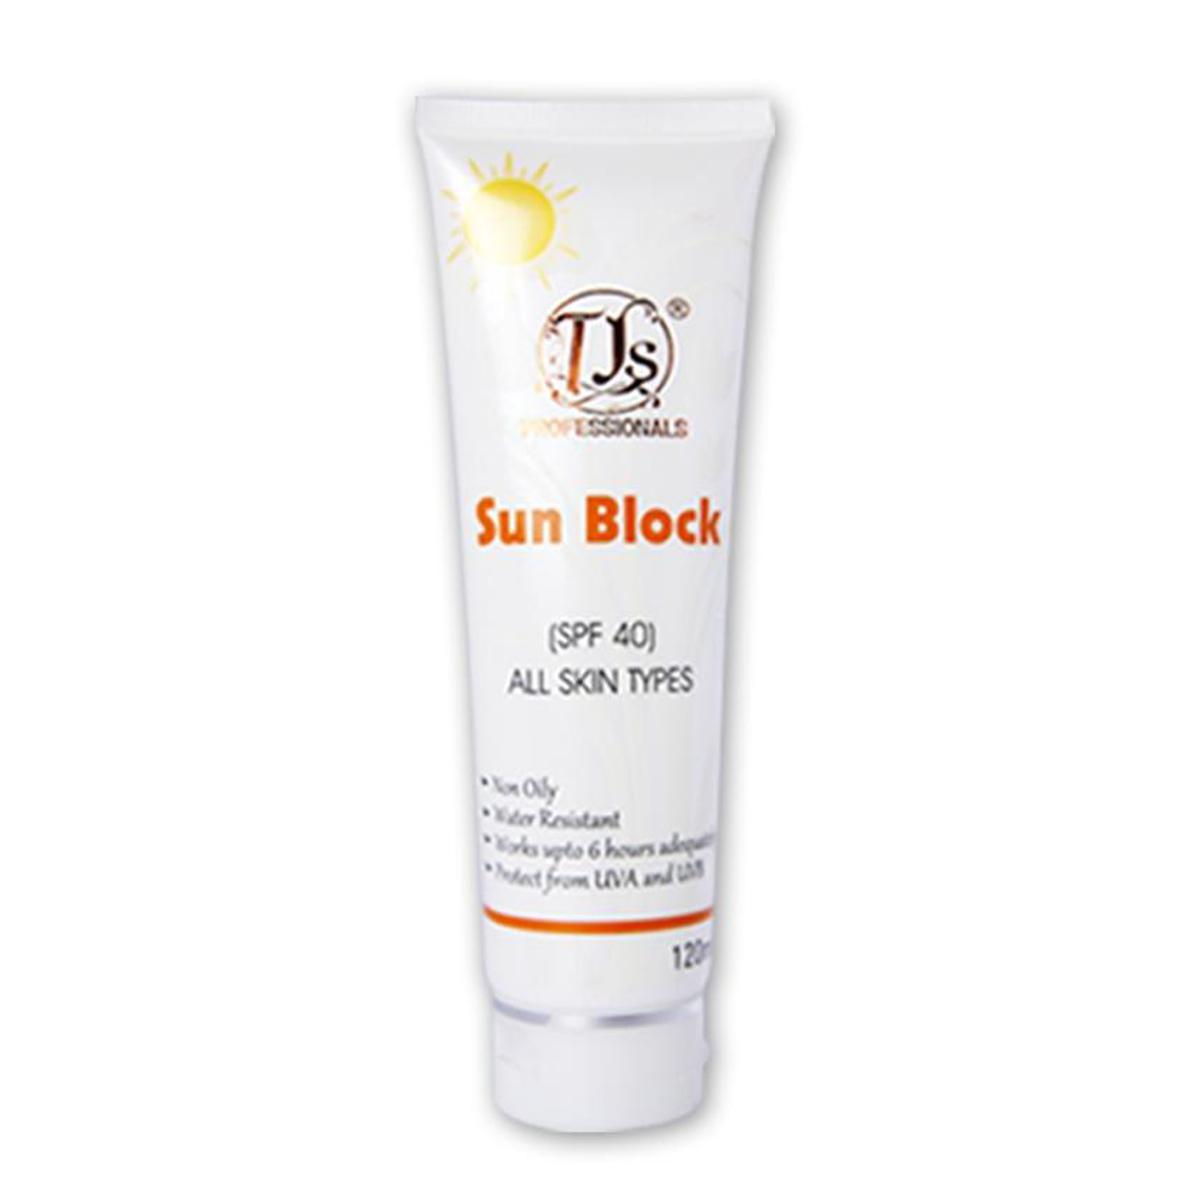 TJS Sunblock For All Skin Types SPF 40